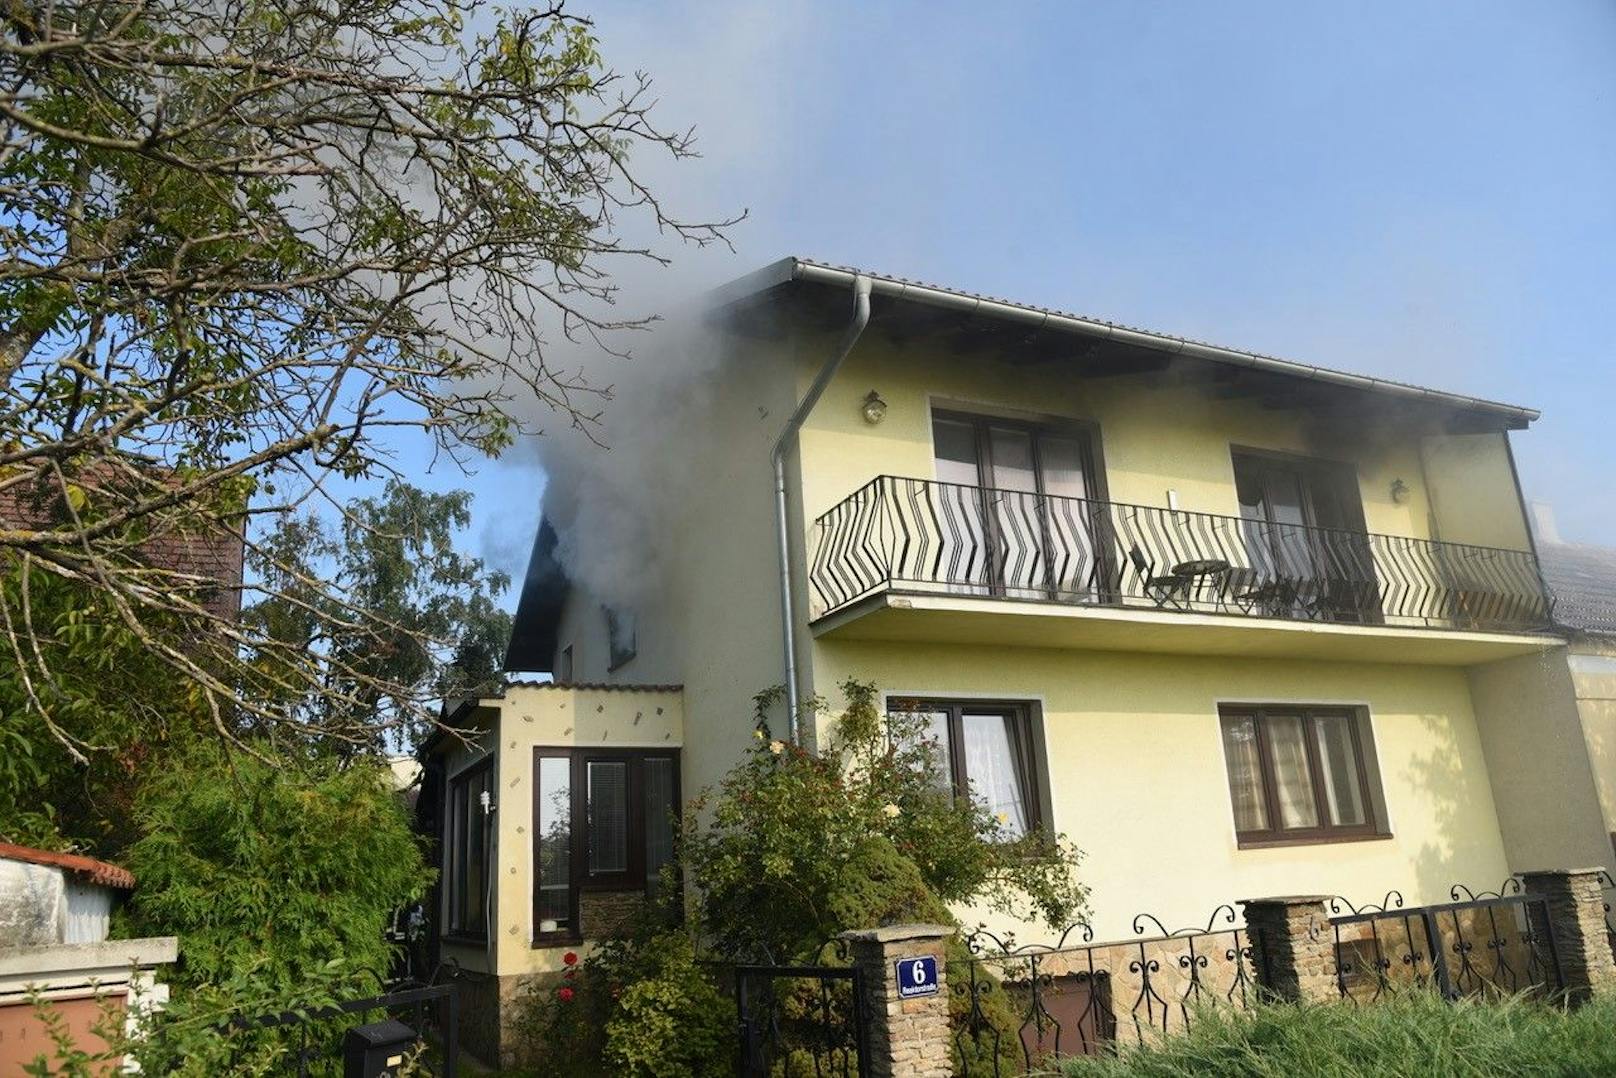 Wohnhaus in Reisenberg stand in Flammen